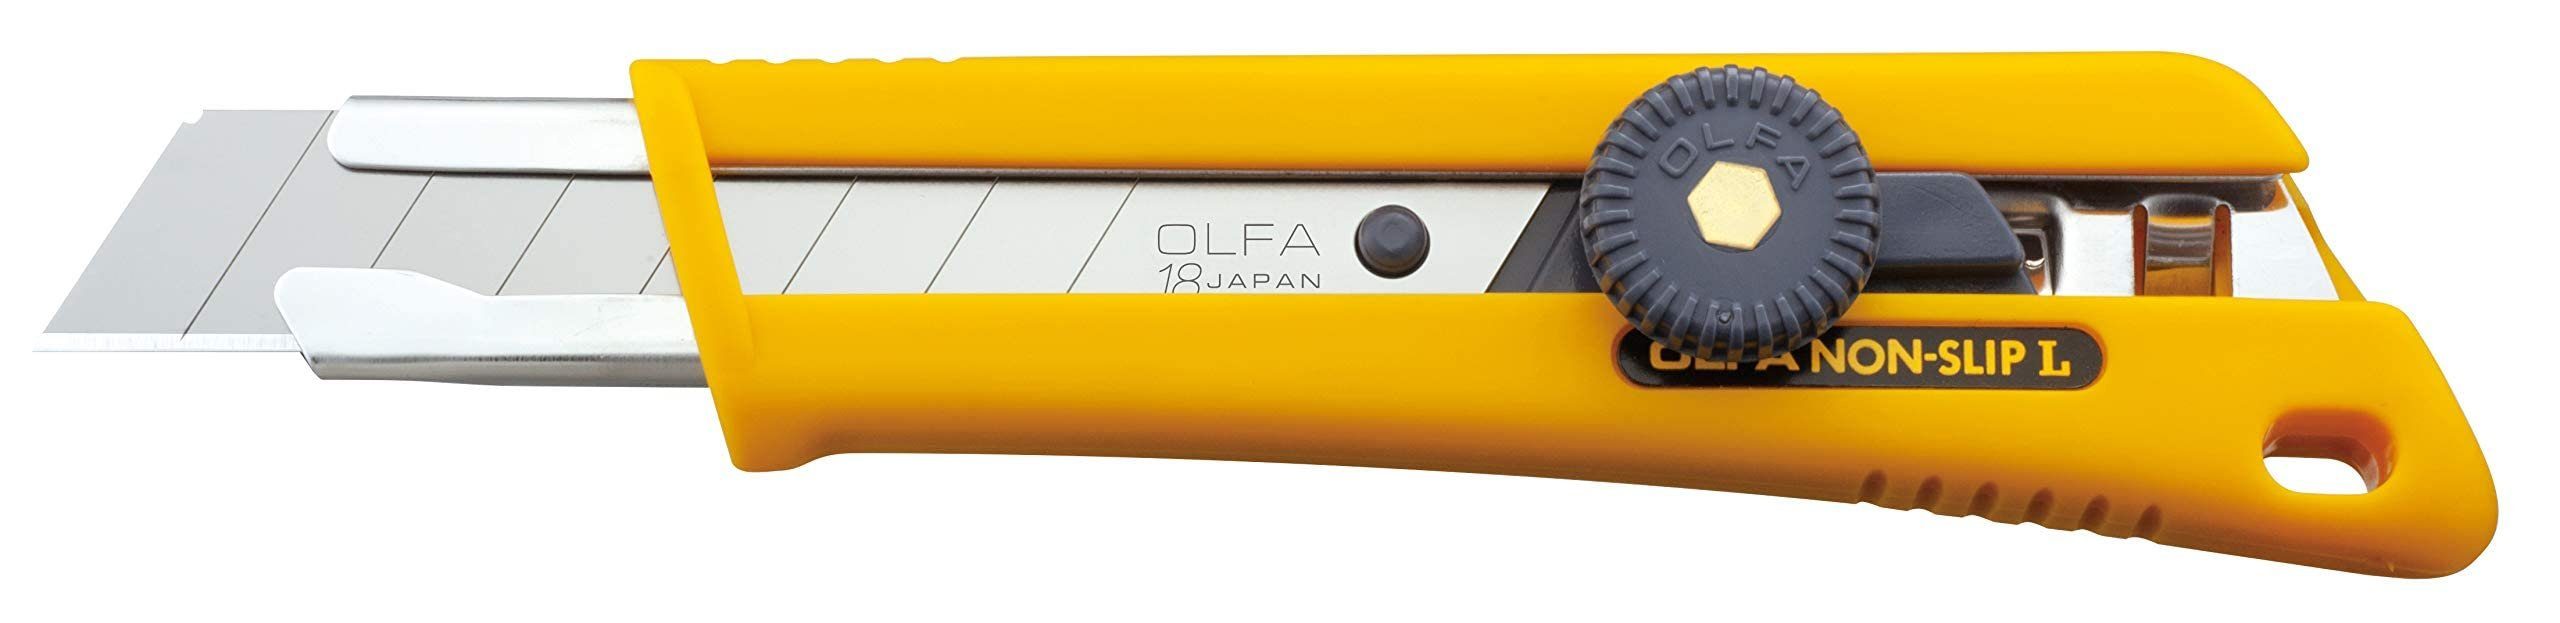 rutschfestes Cutter Cuttermesser NOL-1 18mm OLFA Olfa